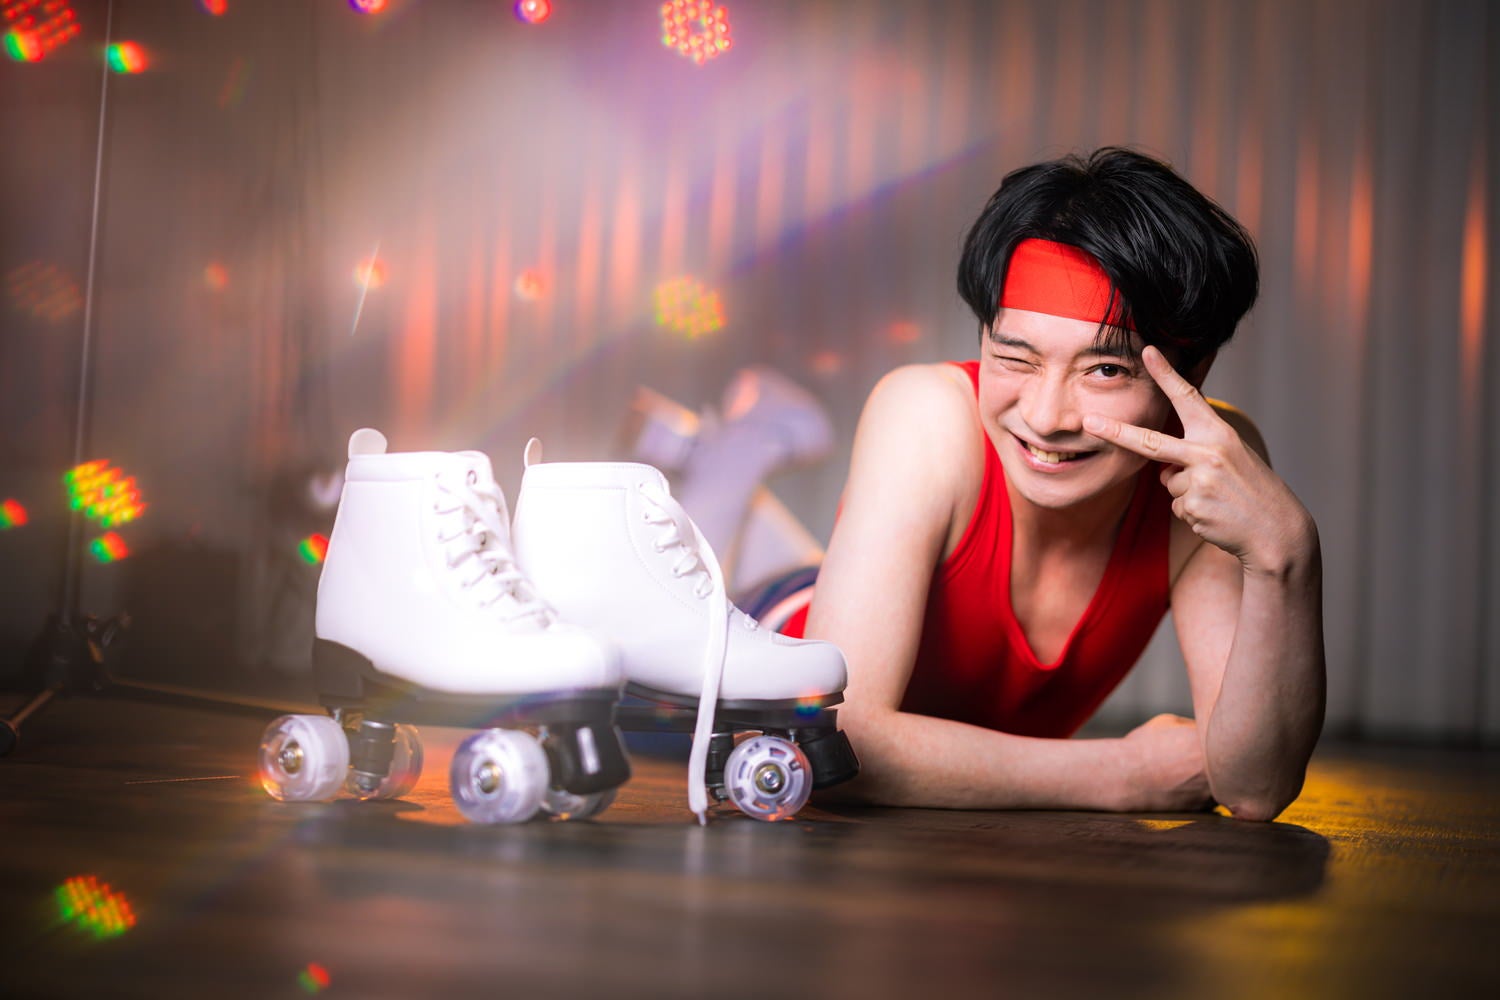 昭和アイドル風にローラースケートでステージデビューの無料写真素材
